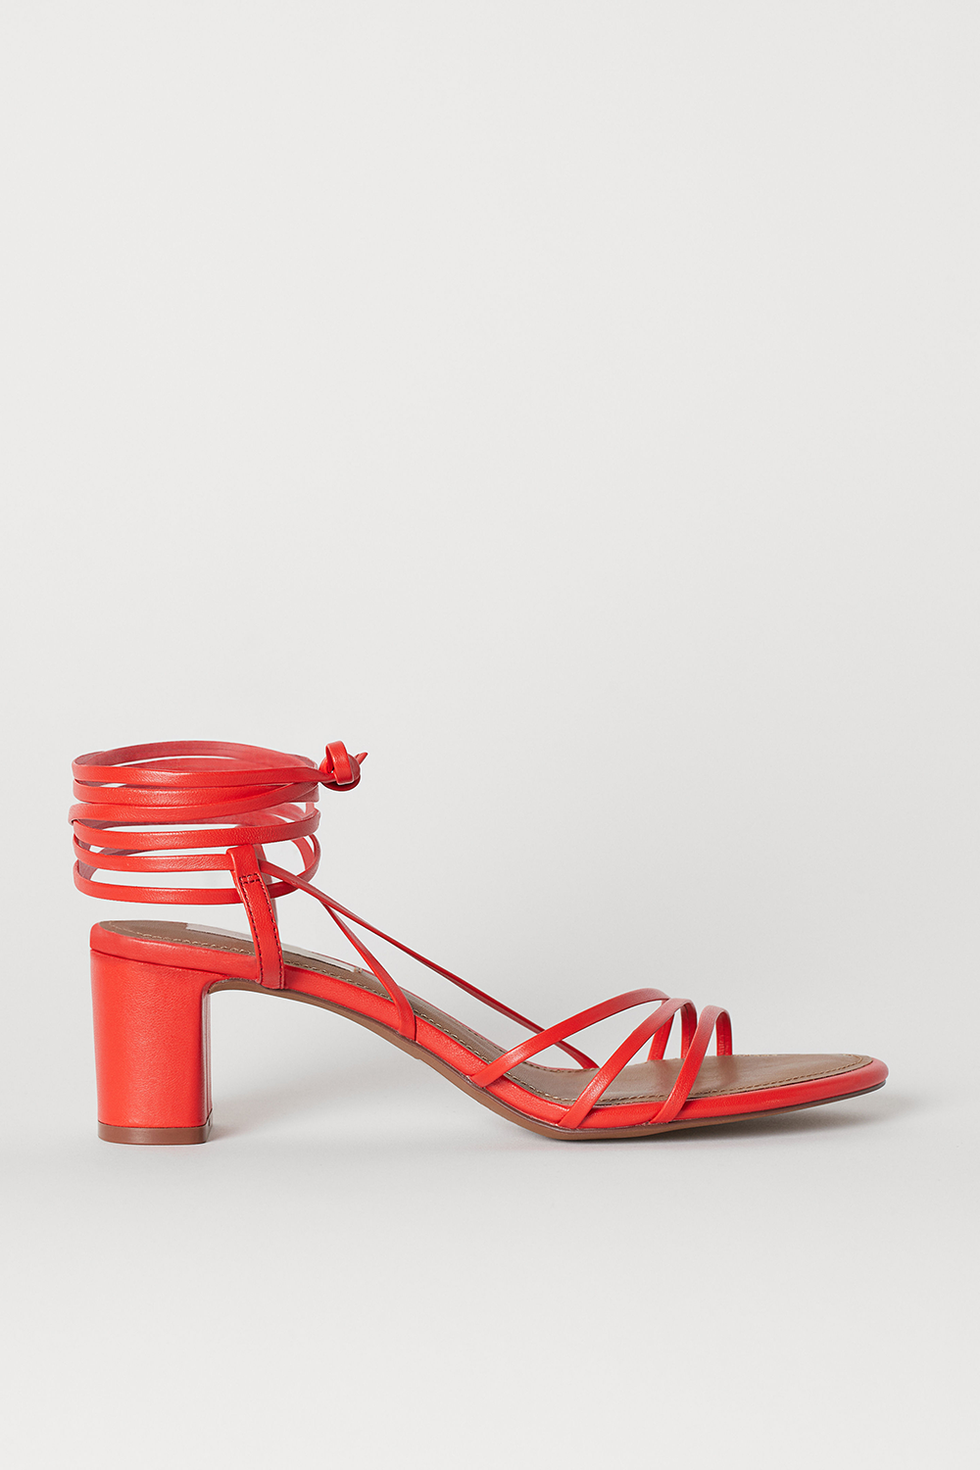  scarpe-moda-2019-h-m-tendenza-moda-primavera-estate-2019